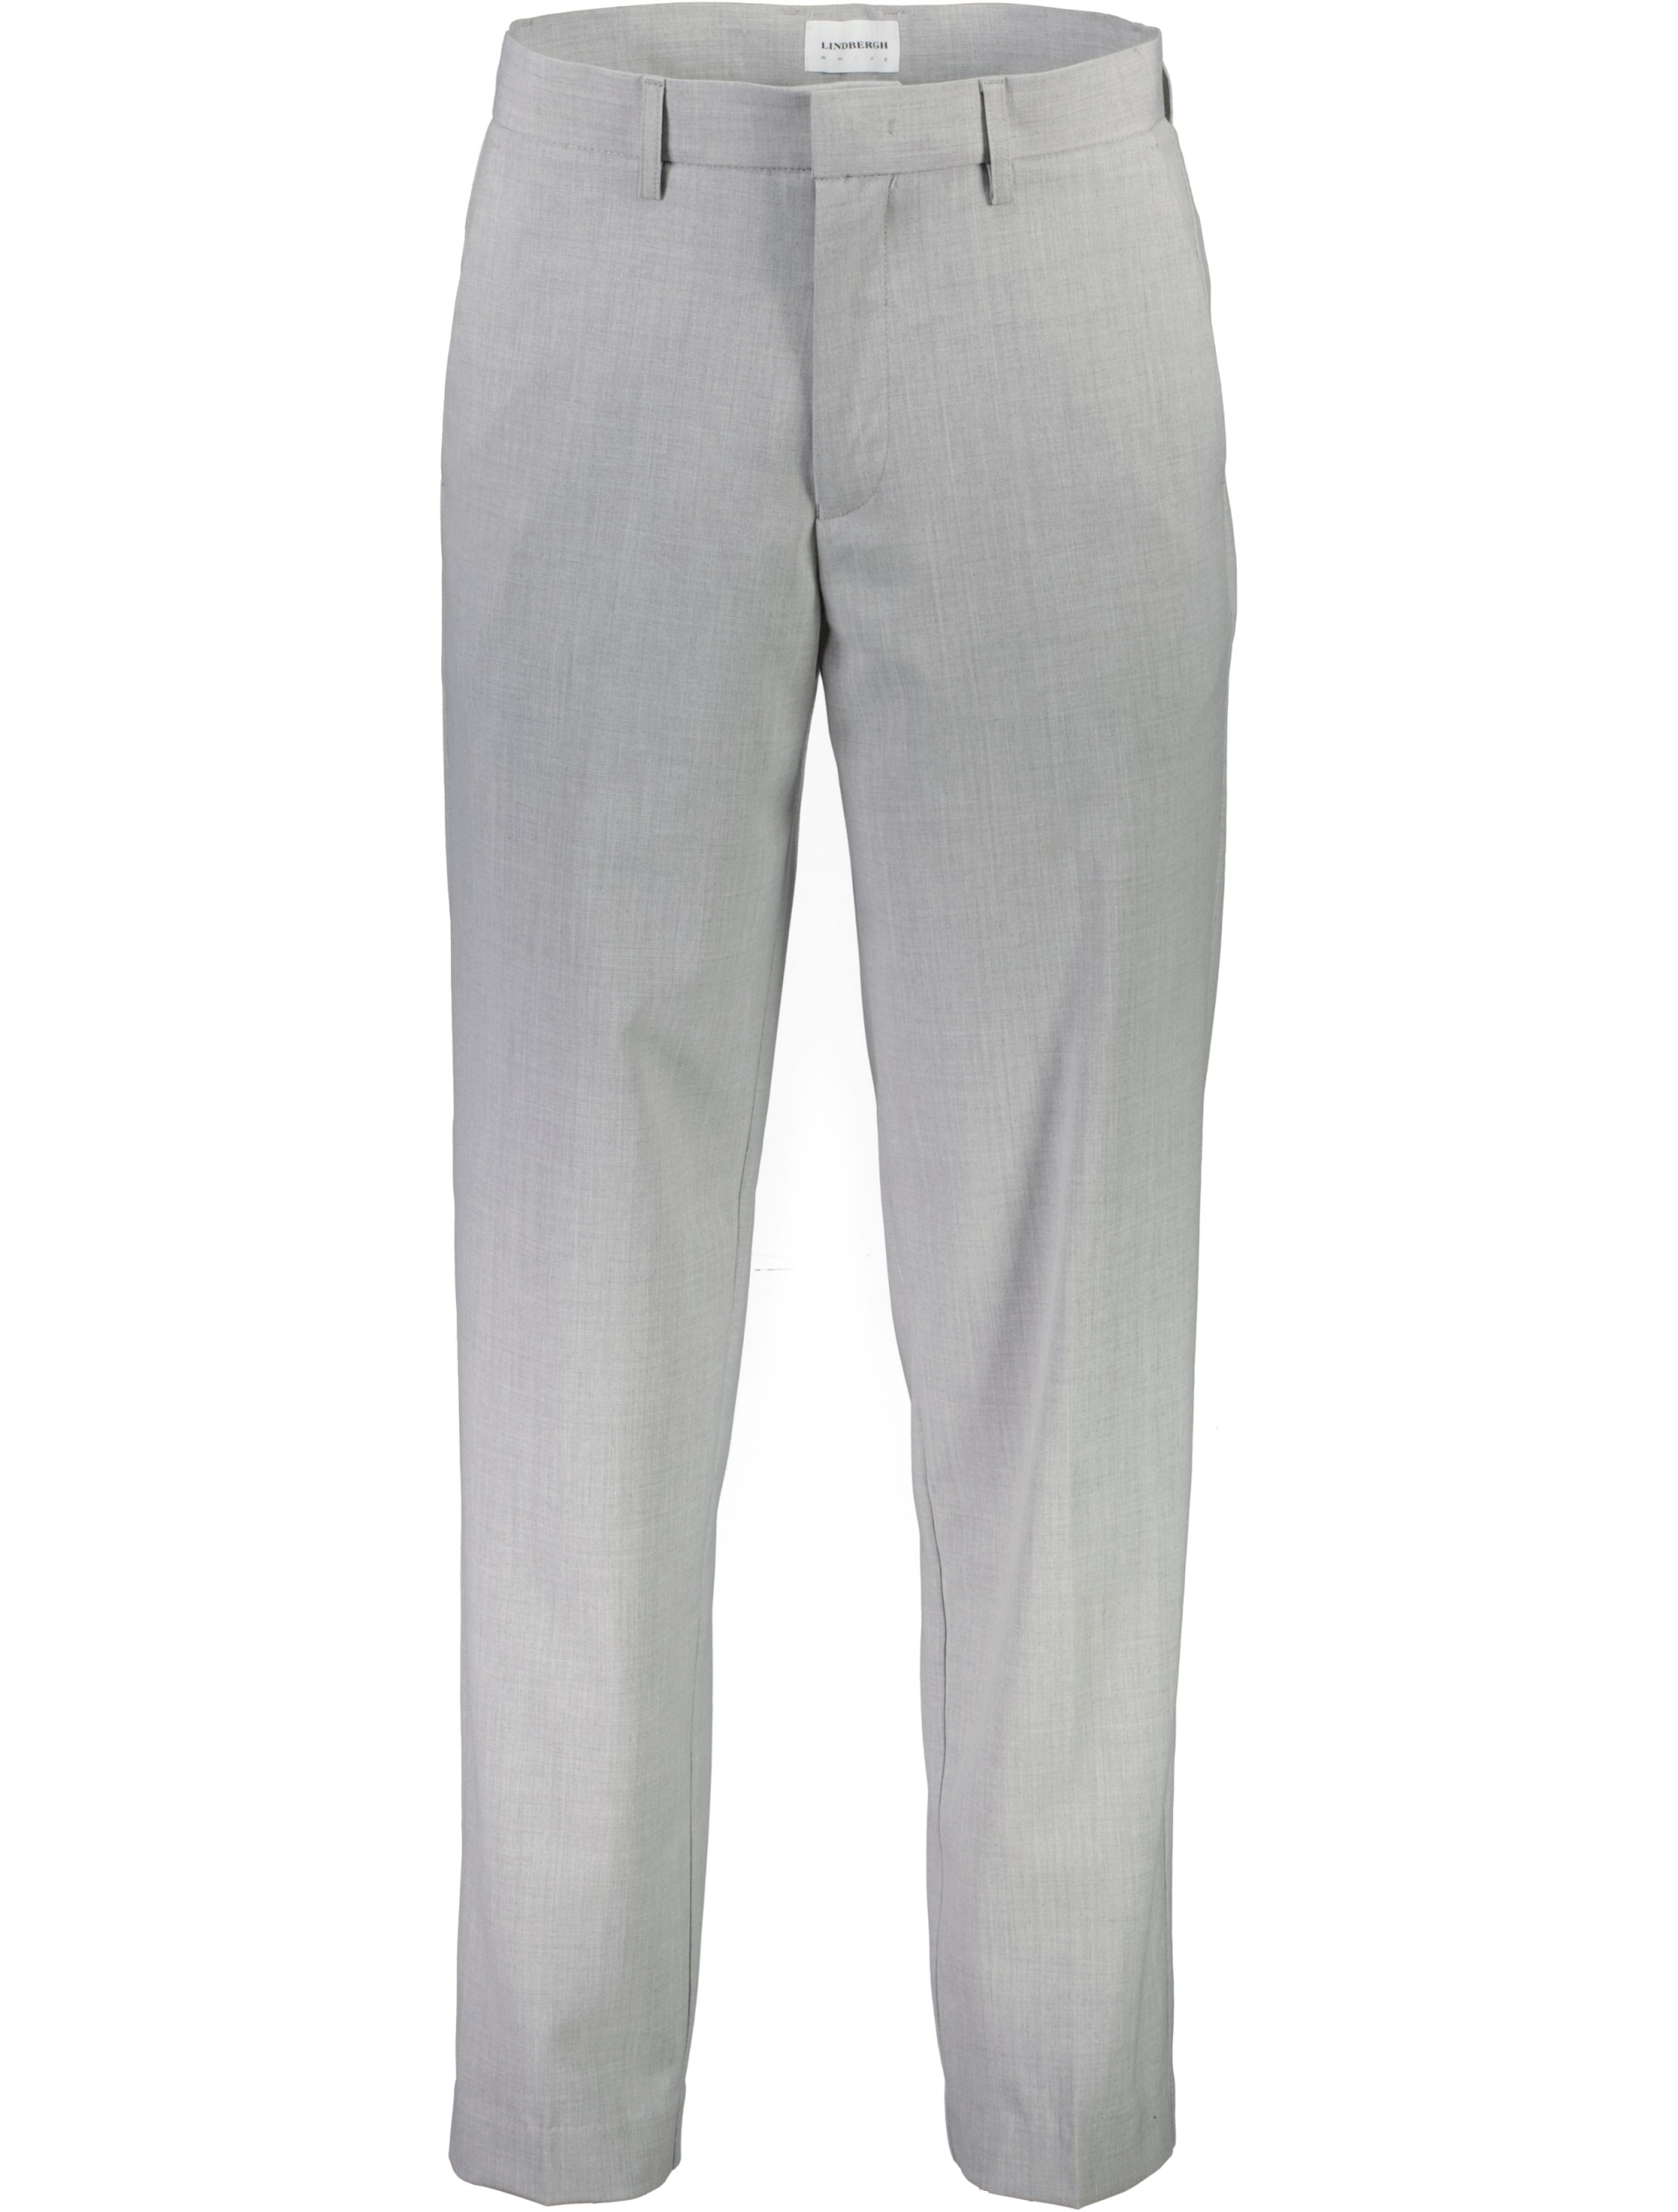 Lindbergh Classic trousers grey / lt grey mix